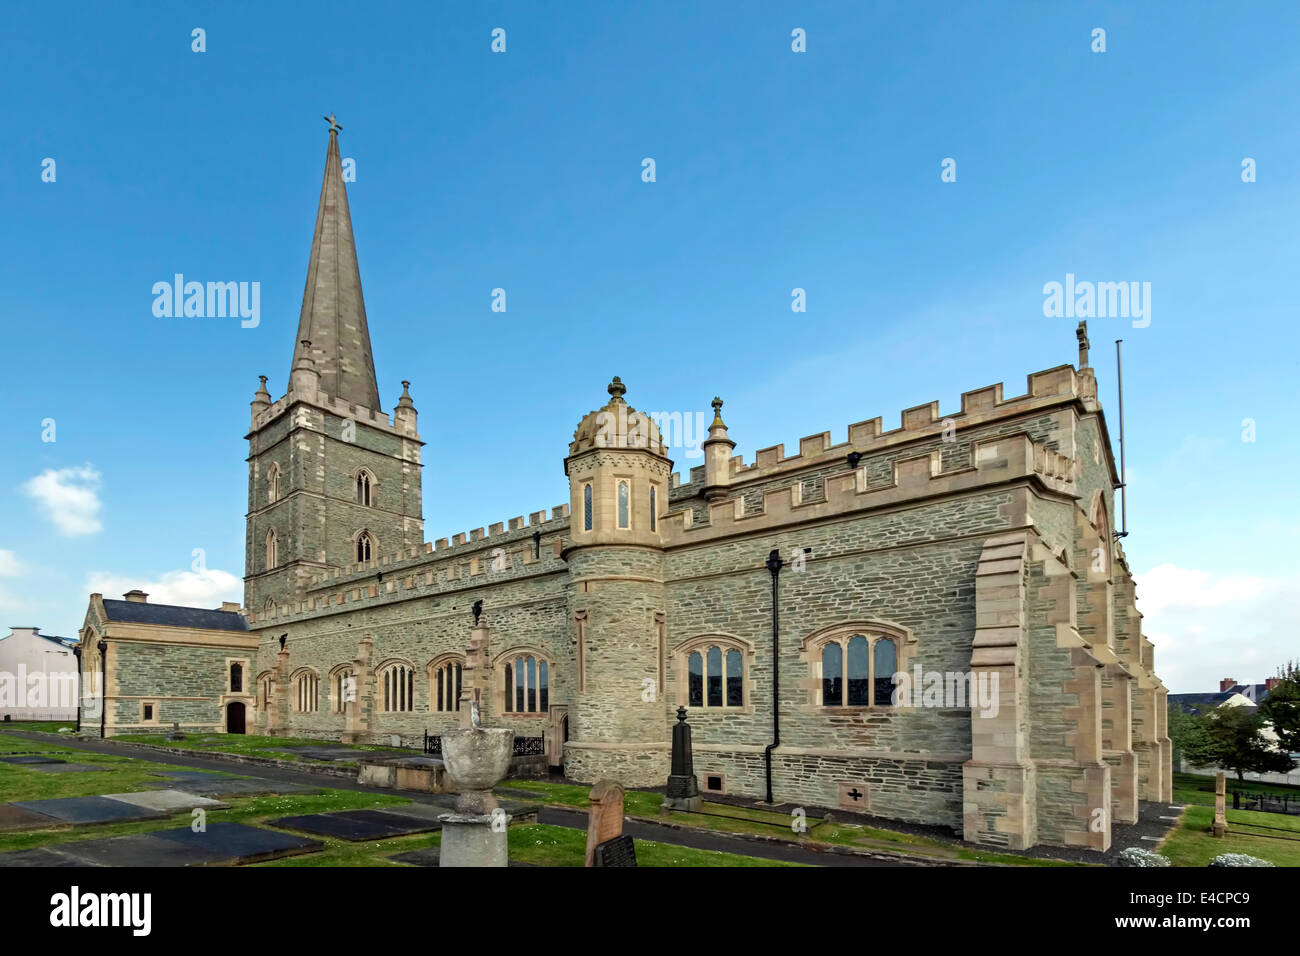 Cathédrale St Columb dans la ville fortifiée de Leicester, comté de Derry, Irlande du Nord, Royaume-Uni. Banque D'Images